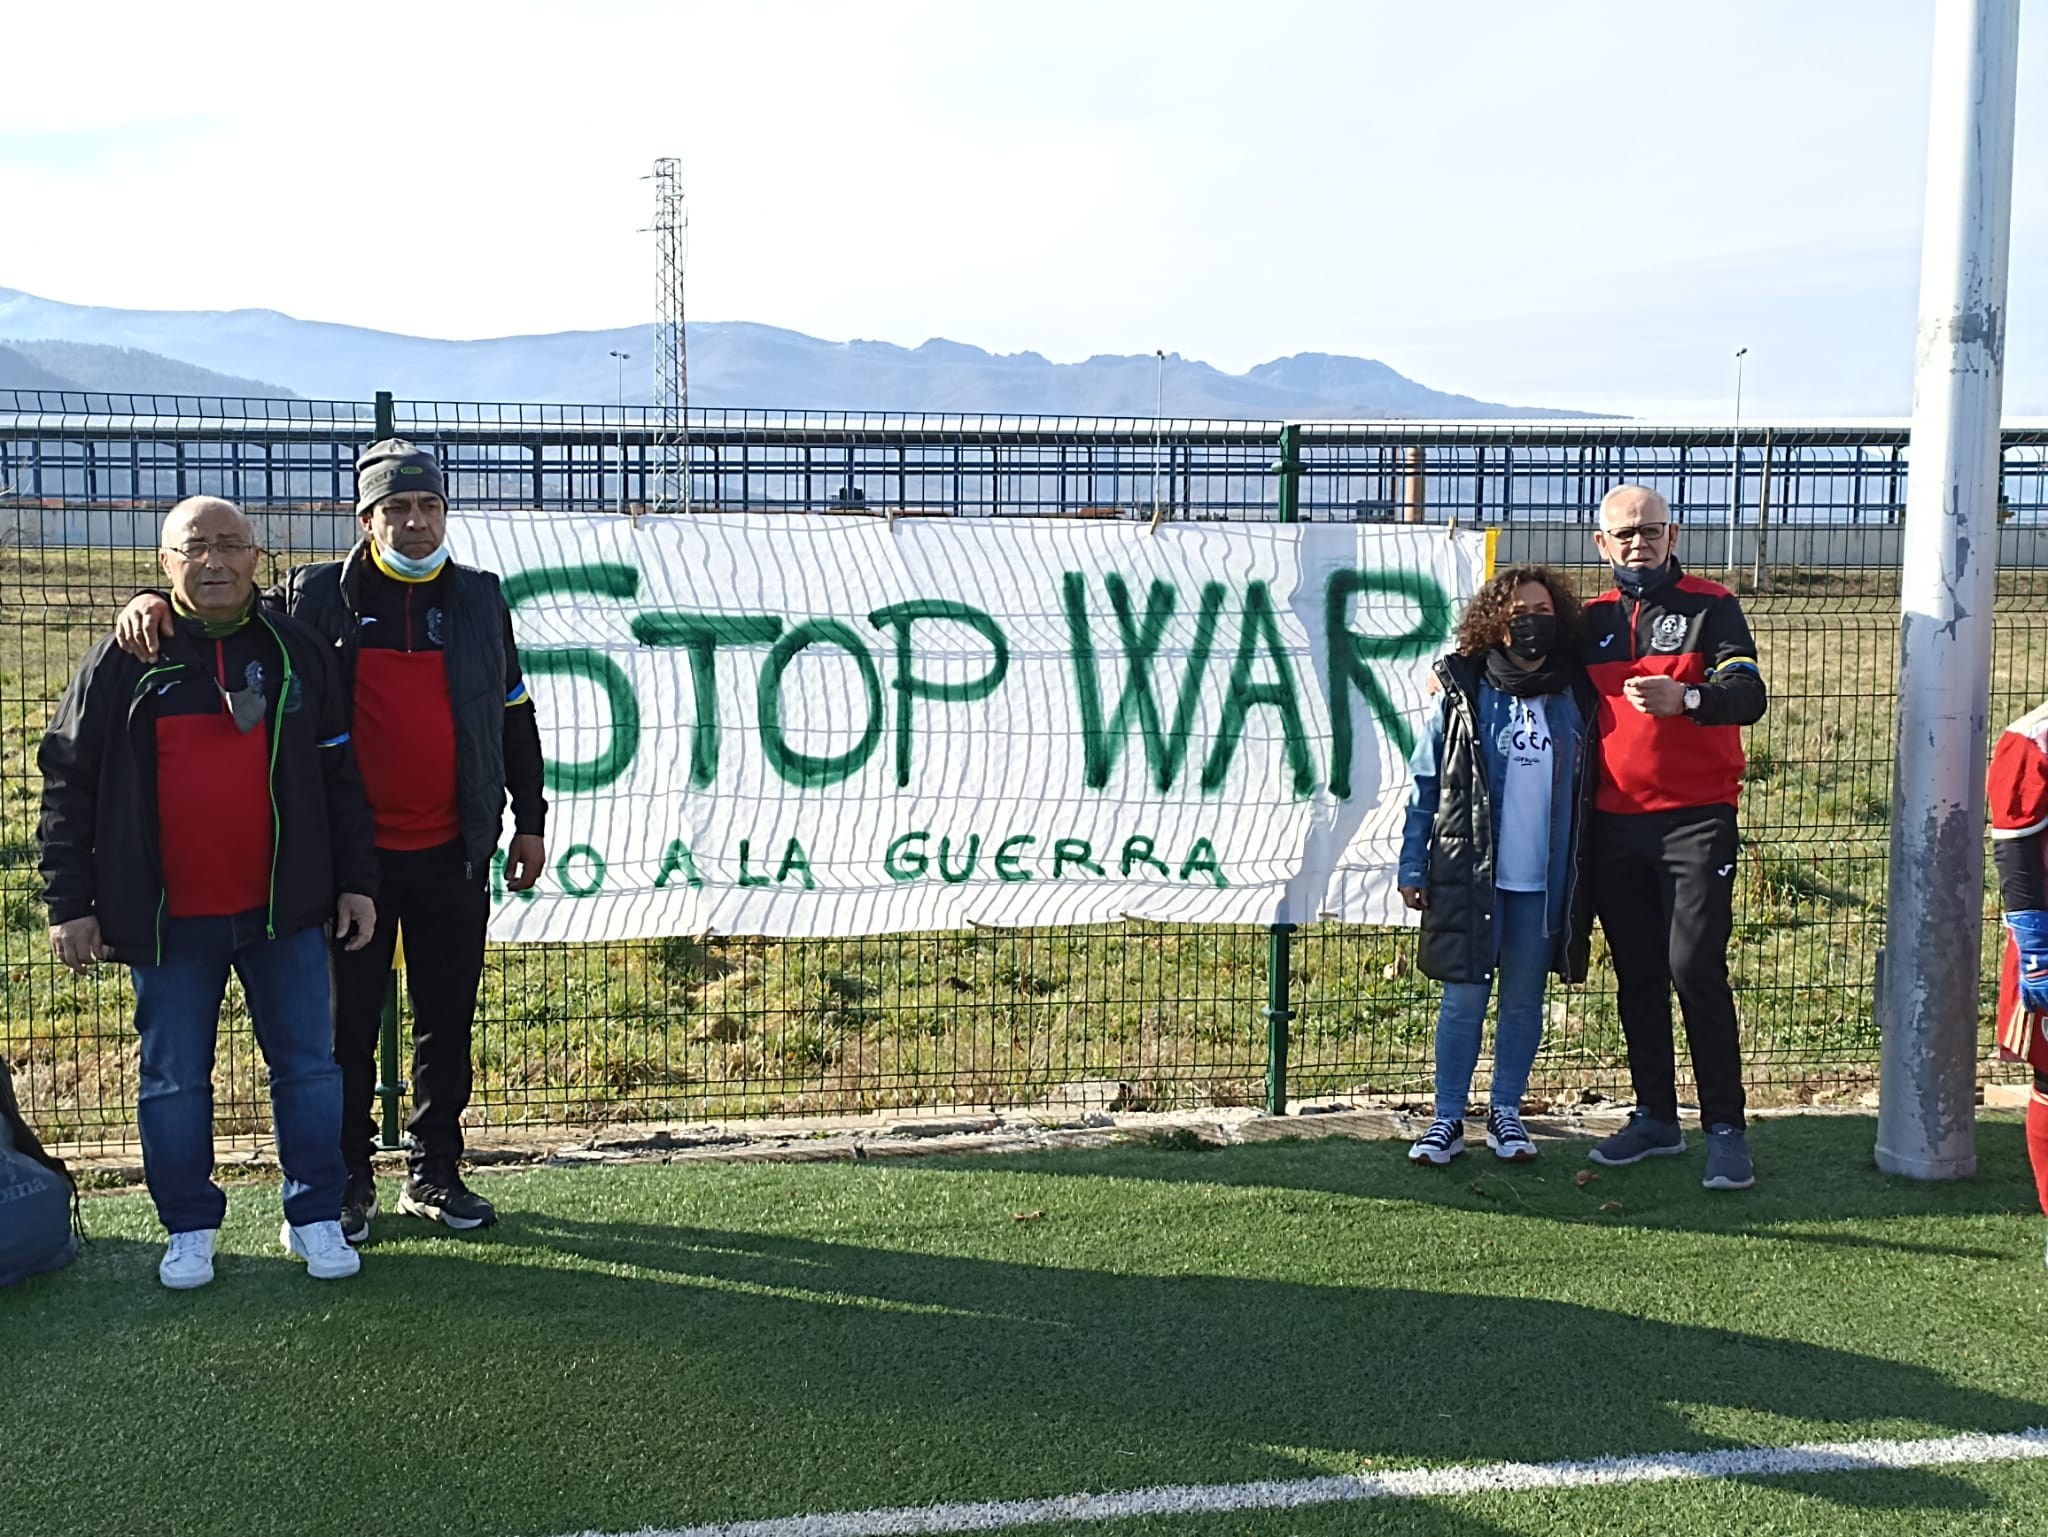 El fútbol Base berciano dice NO A LA GUERRA durante los partidos del fin de semana 1